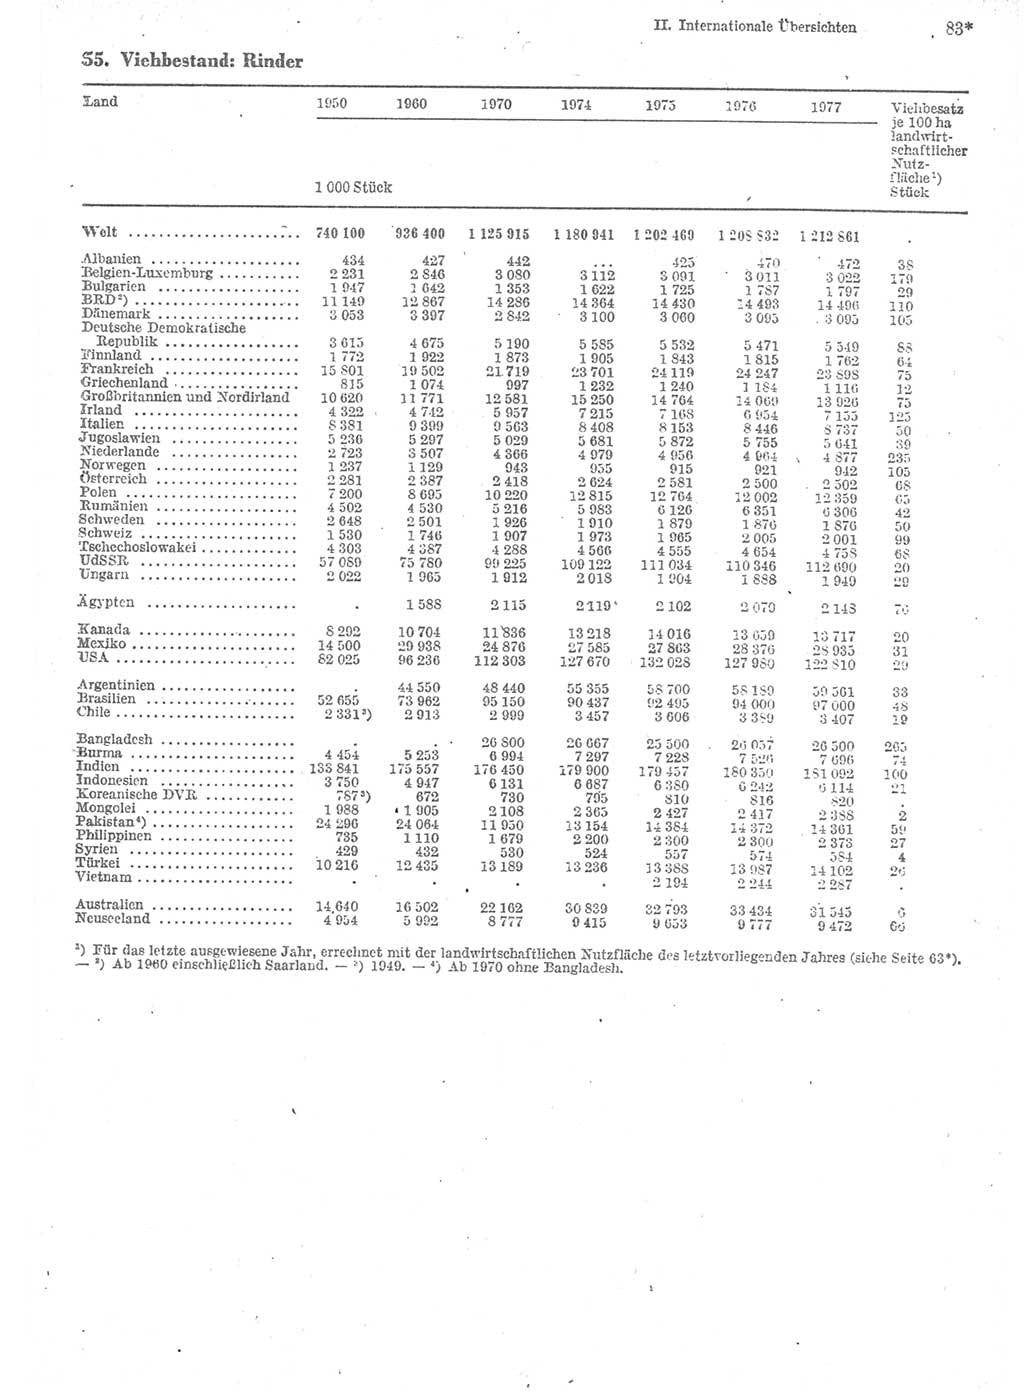 Statistisches Jahrbuch der Deutschen Demokratischen Republik (DDR) 1979, Seite 83 (Stat. Jb. DDR 1979, S. 83)